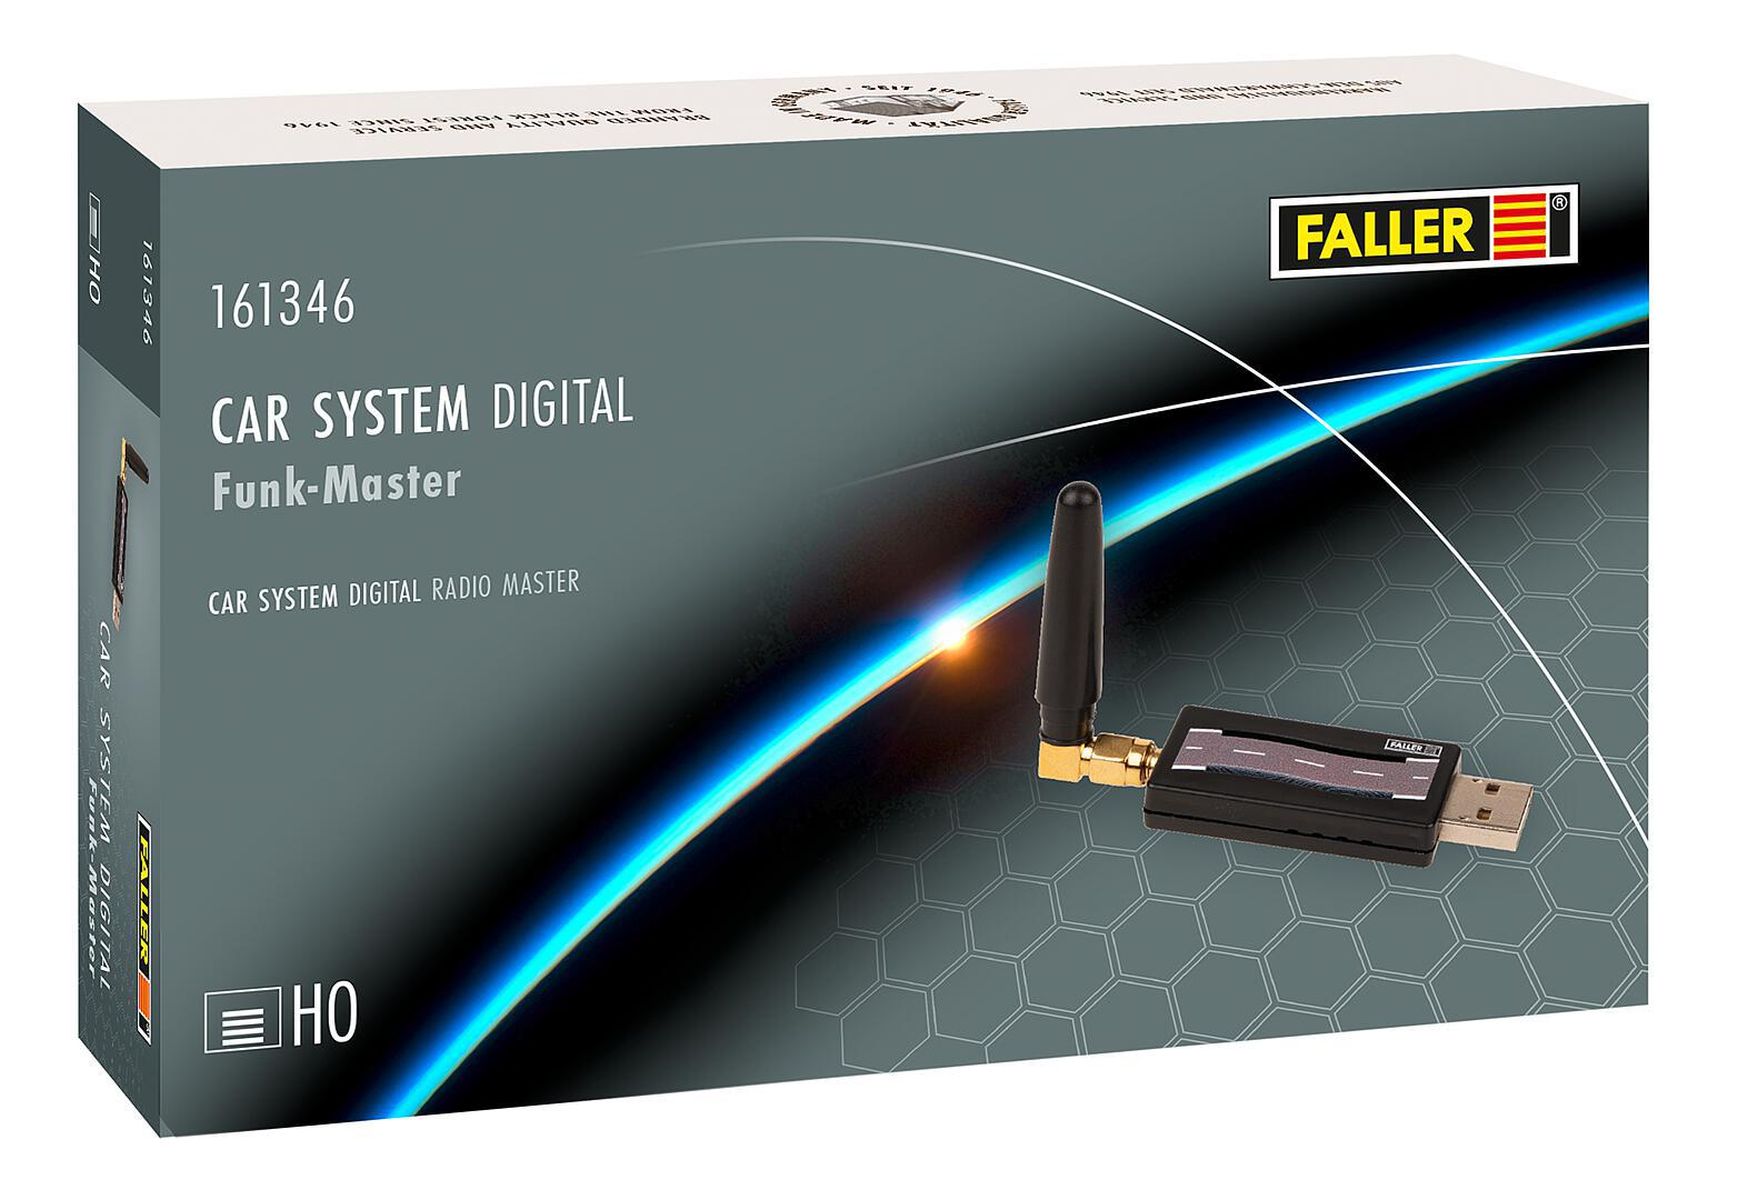 Faller 161346 - Car System Digital, Funk-Master